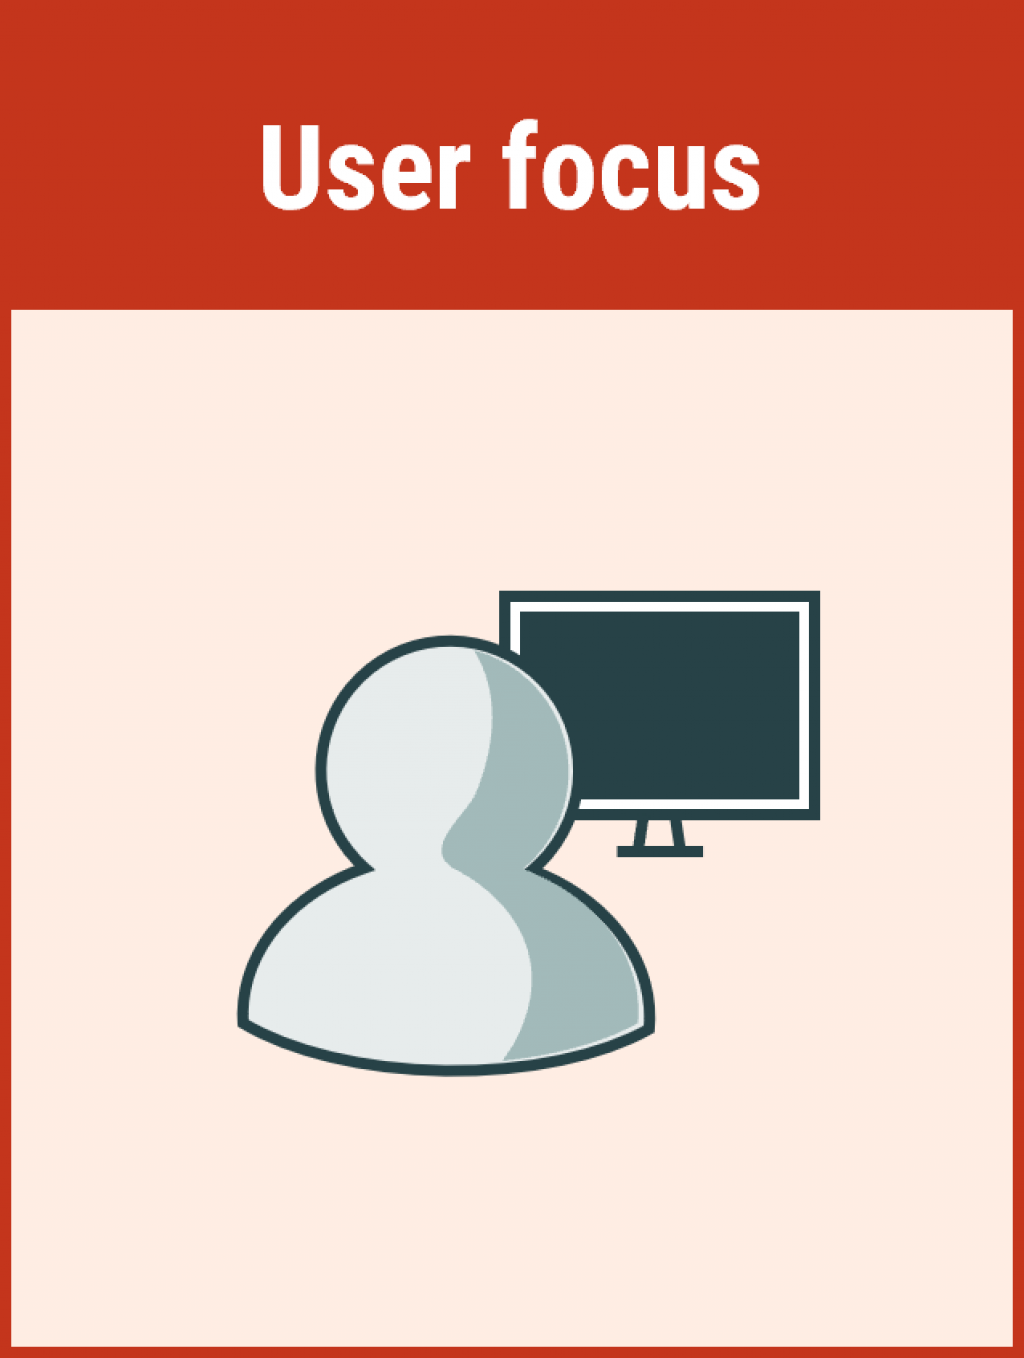 User focus principle of information models.